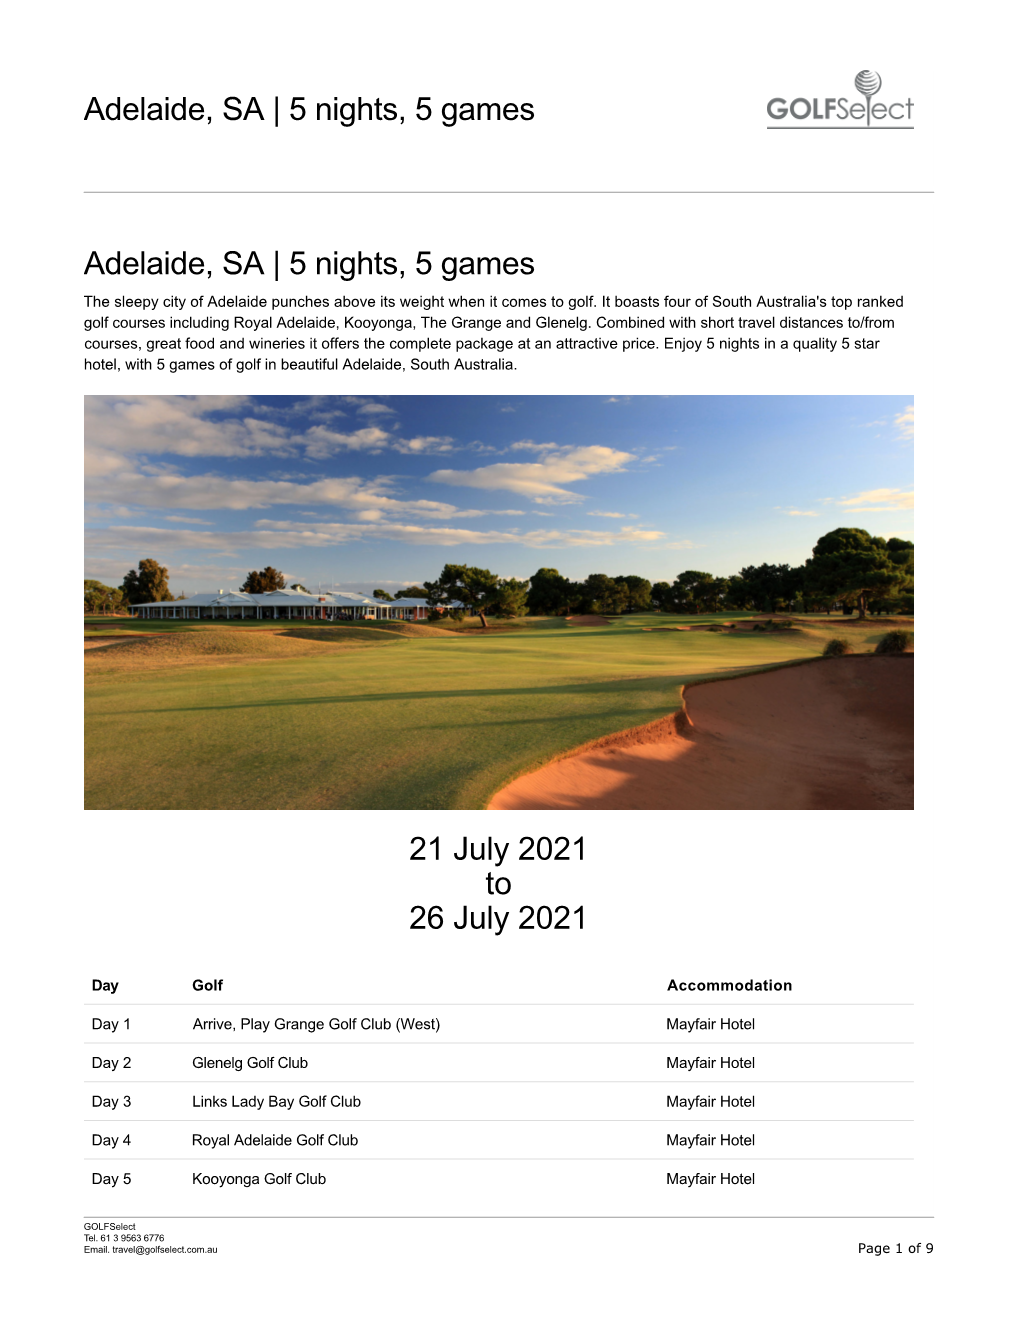 Adelaide, SA | 5 Nights, 5 Games